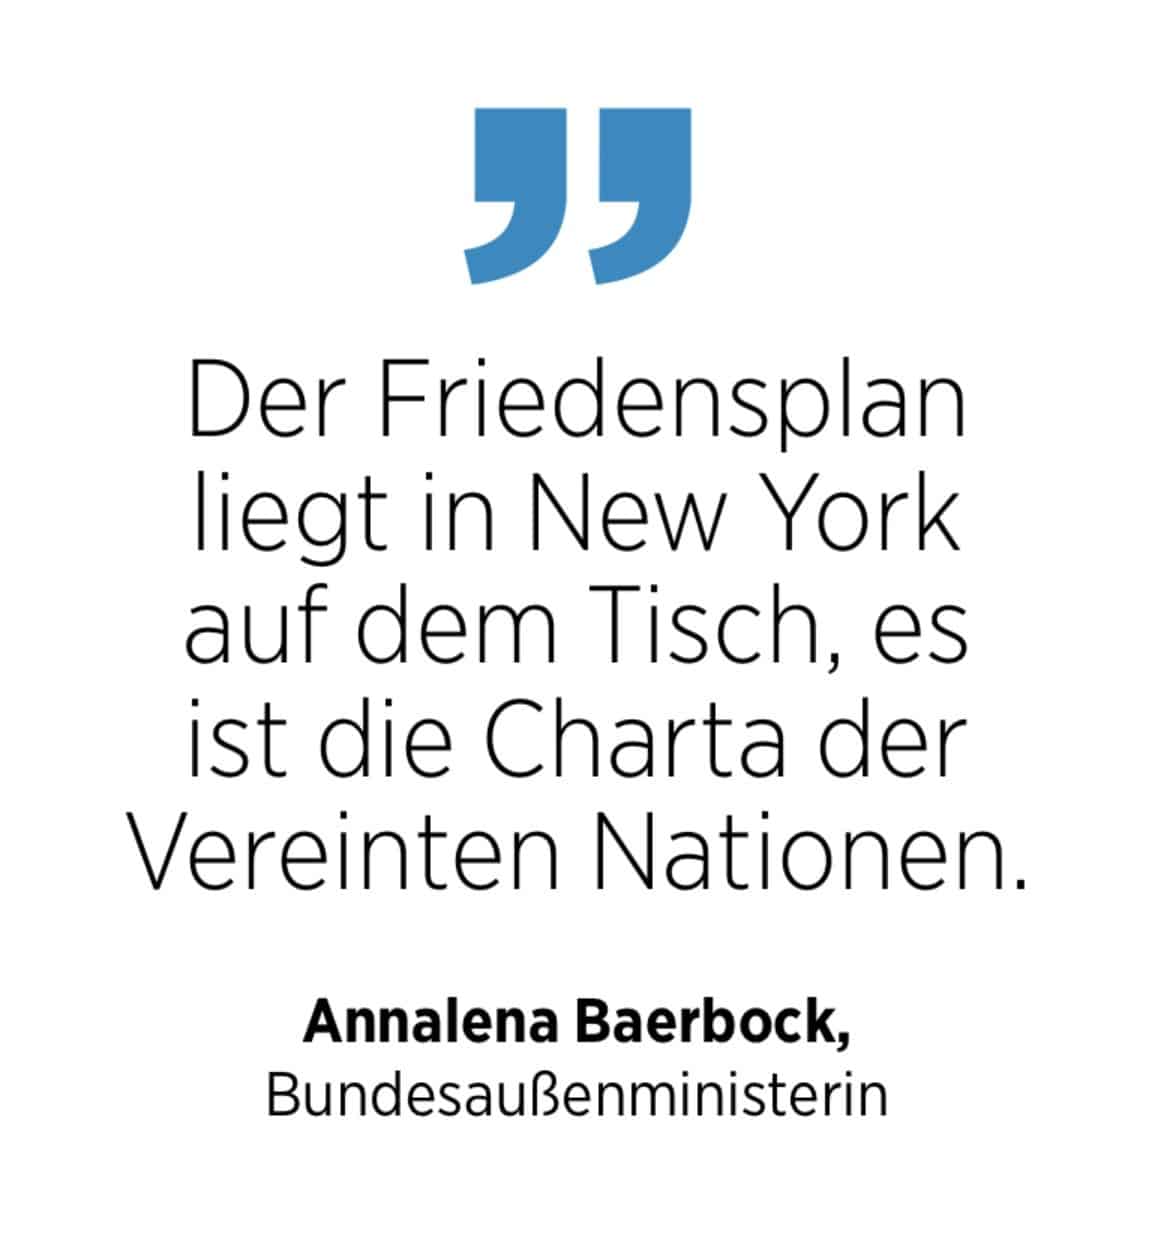 Zitat von Annalena Baerbock zur Charta der Vereinten Nationen